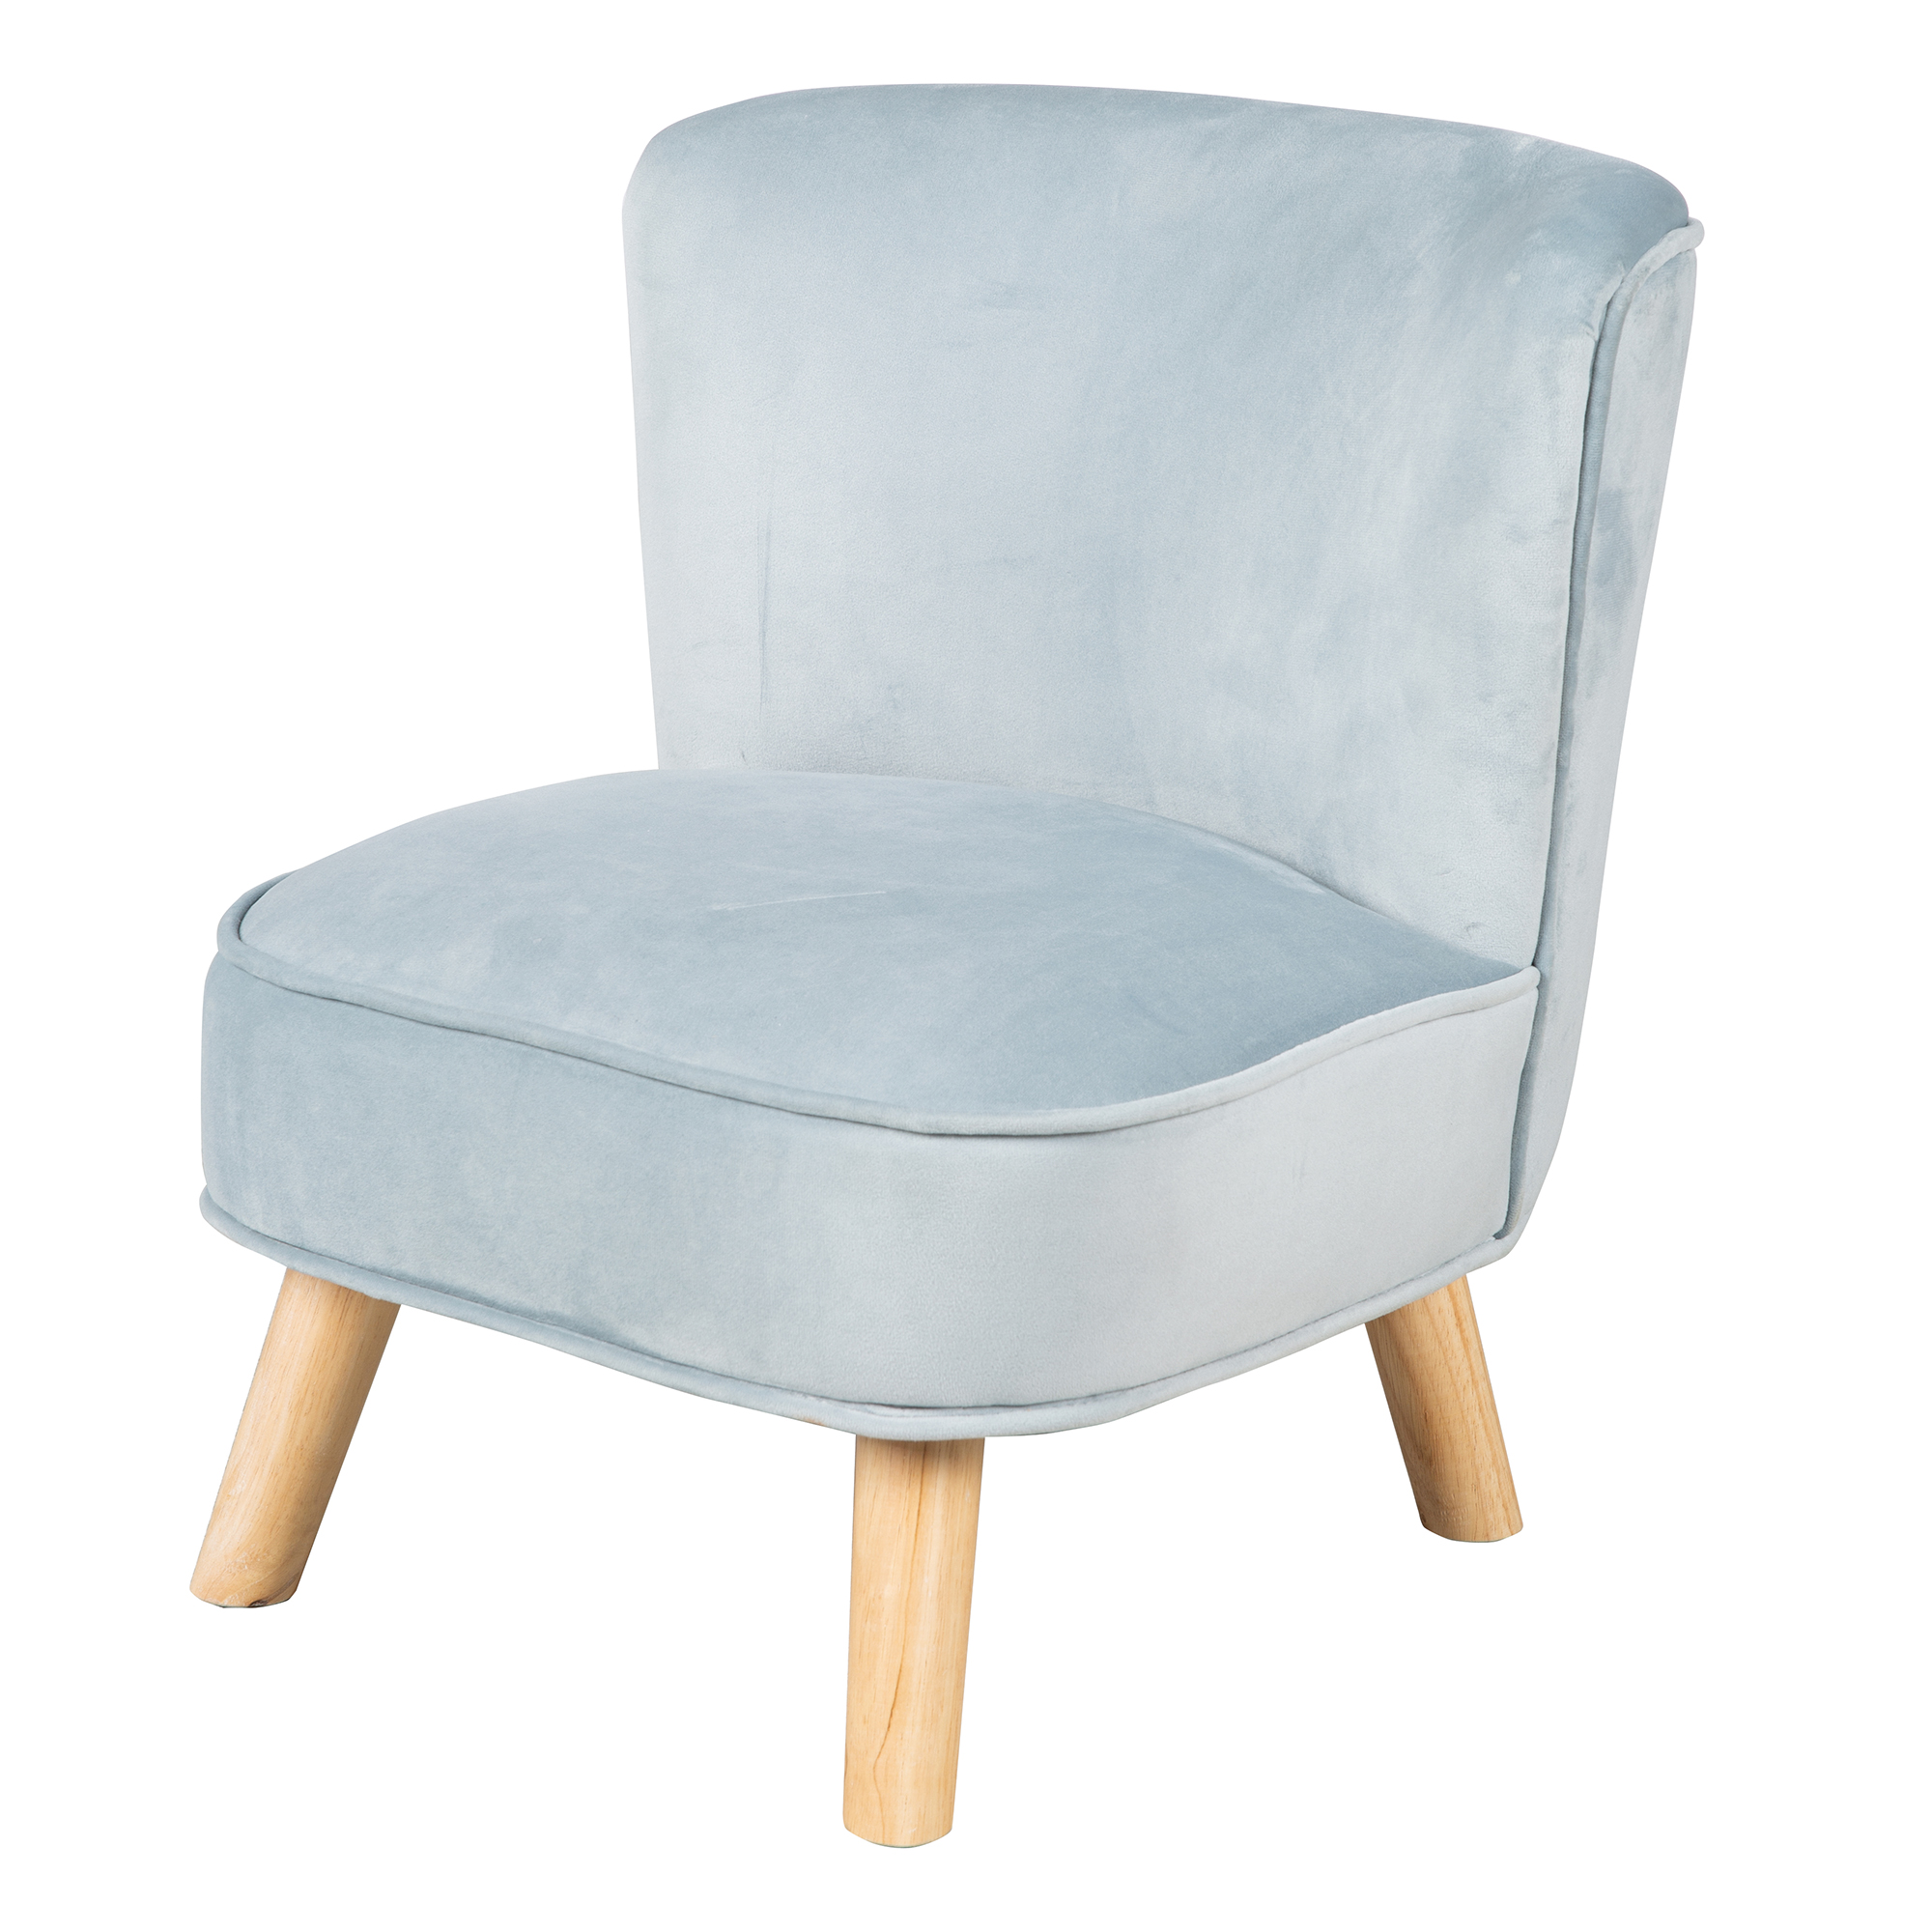 Кресло детское Roba мягкое велюровое на деревянных ножках Lil Sofa, голубой